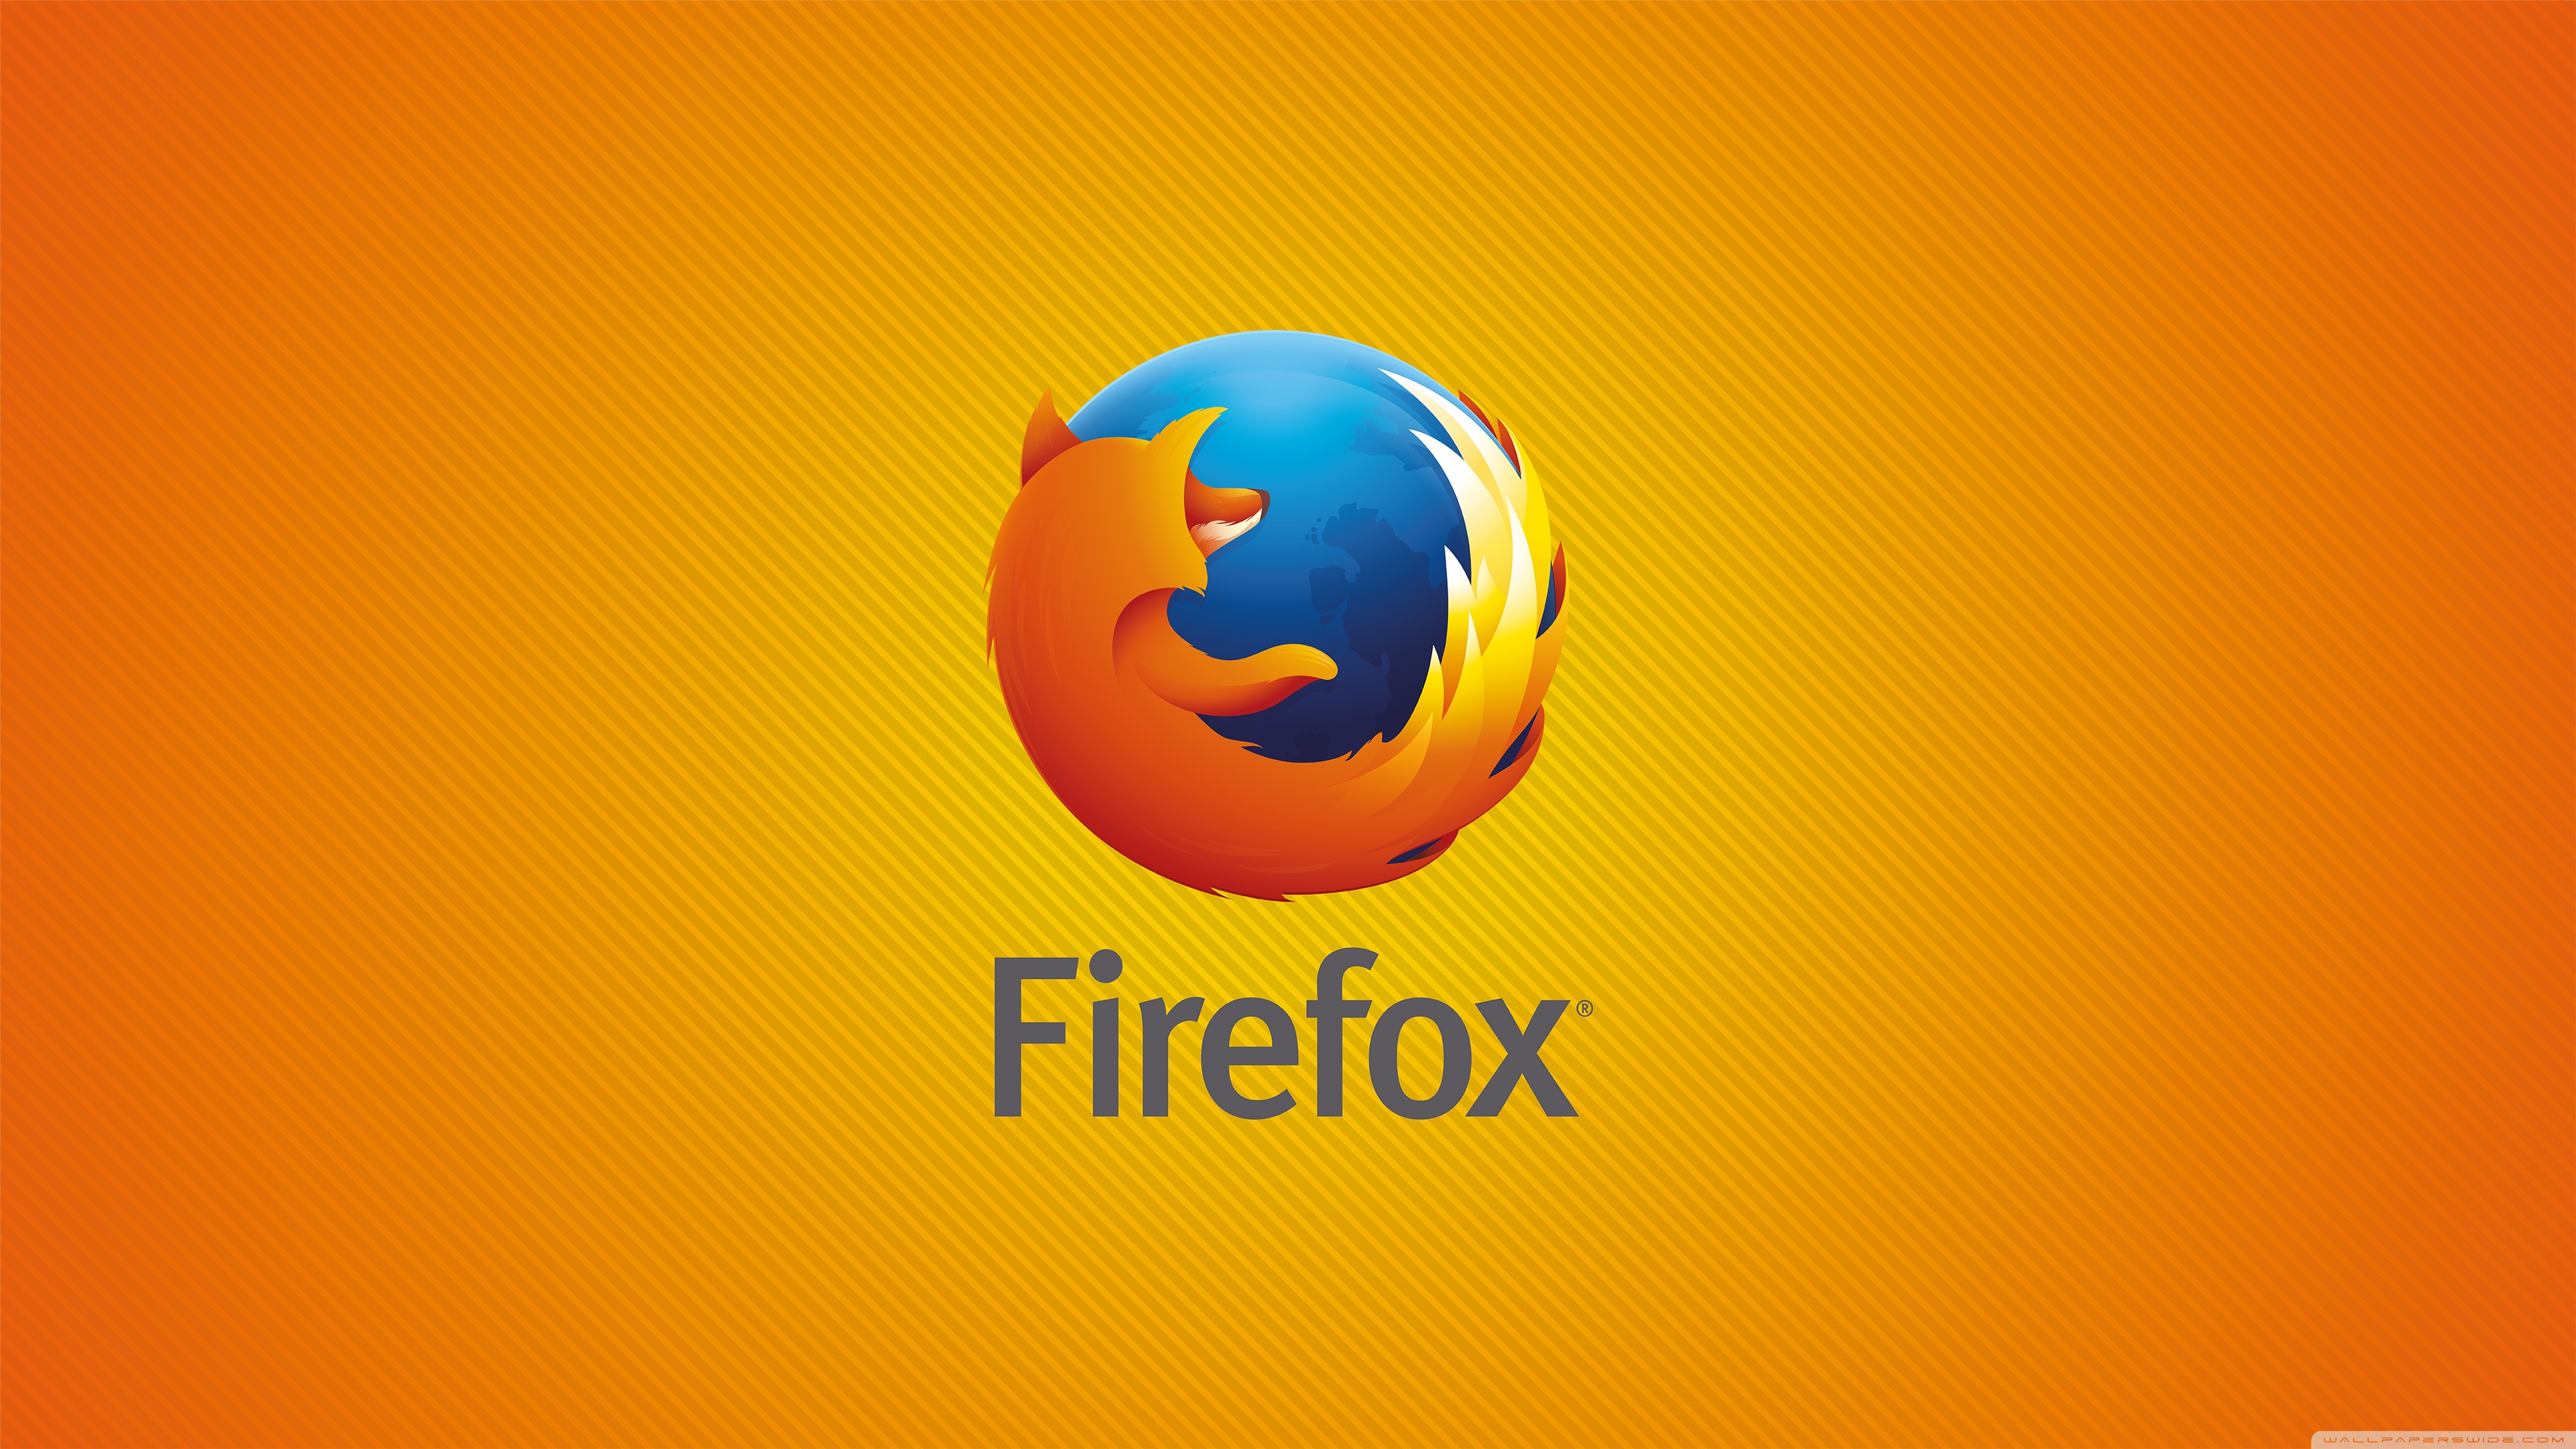 Mozilla, Firefox için Google Çeviri entegrasyonu üzerinde çalışıyor